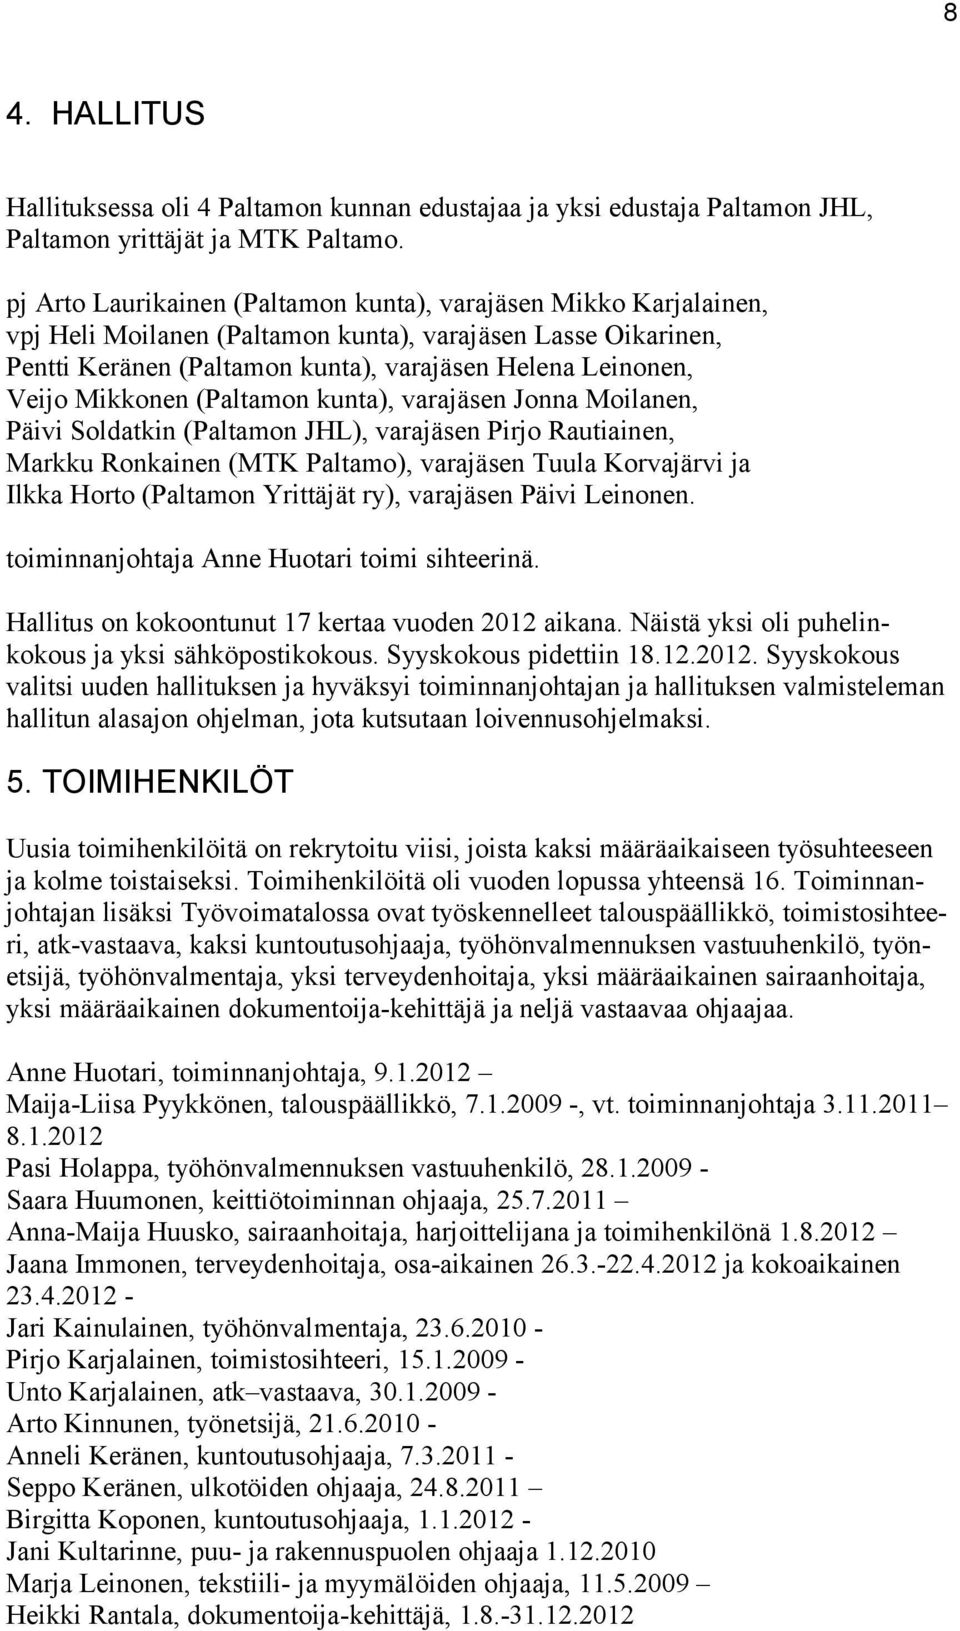 Mikkonen (Paltamon kunta), varajäsen Jonna Moilanen, Päivi Soldatkin (Paltamon JHL), varajäsen Pirjo Rautiainen, Markku Ronkainen (MTK Paltamo), varajäsen Tuula Korvajärvi ja Ilkka Horto (Paltamon